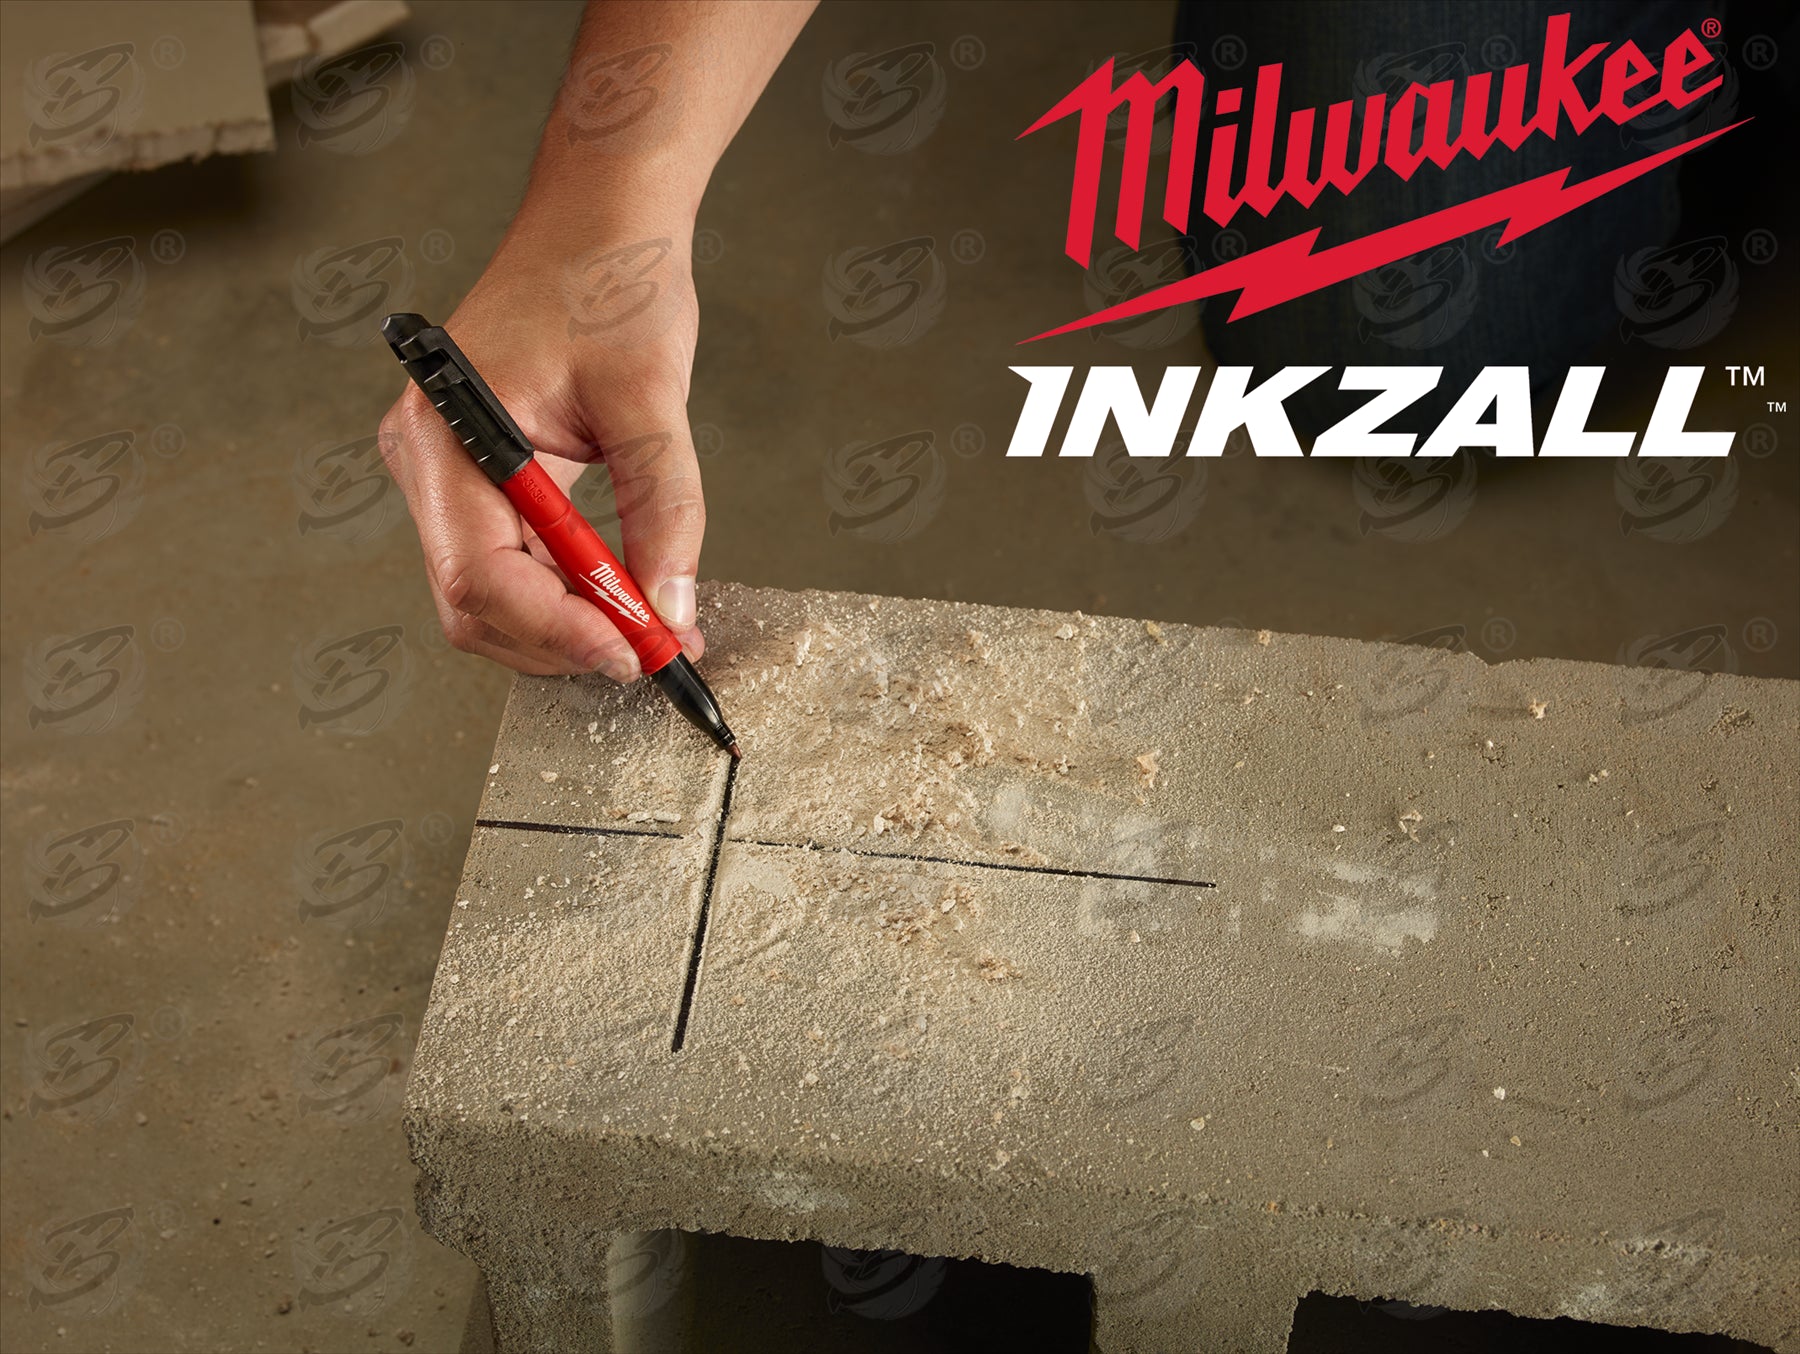 MILWAUKEE INKZALL 1mm ALL SURFACE MARKER PEN